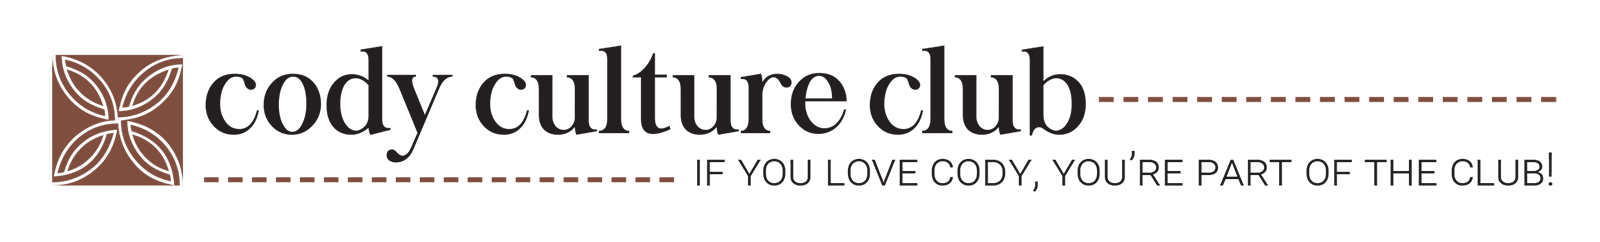 Cody Culture Club logo